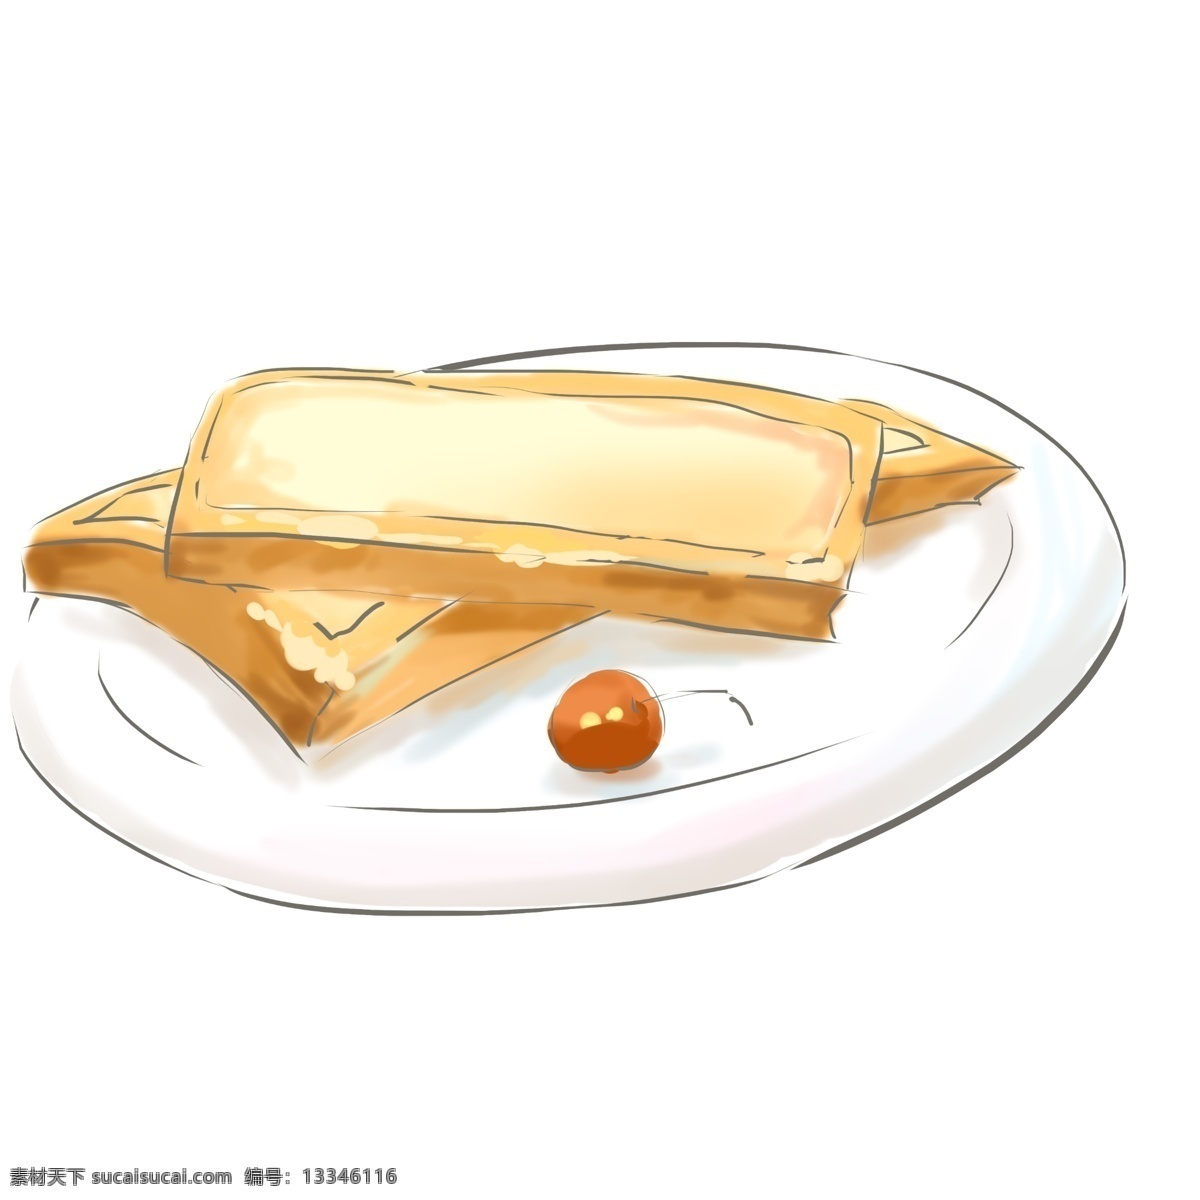 盘 面包 早餐 插画 切片面包 黄色的奶酪 芝士奶酪 美味 水果樱桃 白色 盘子